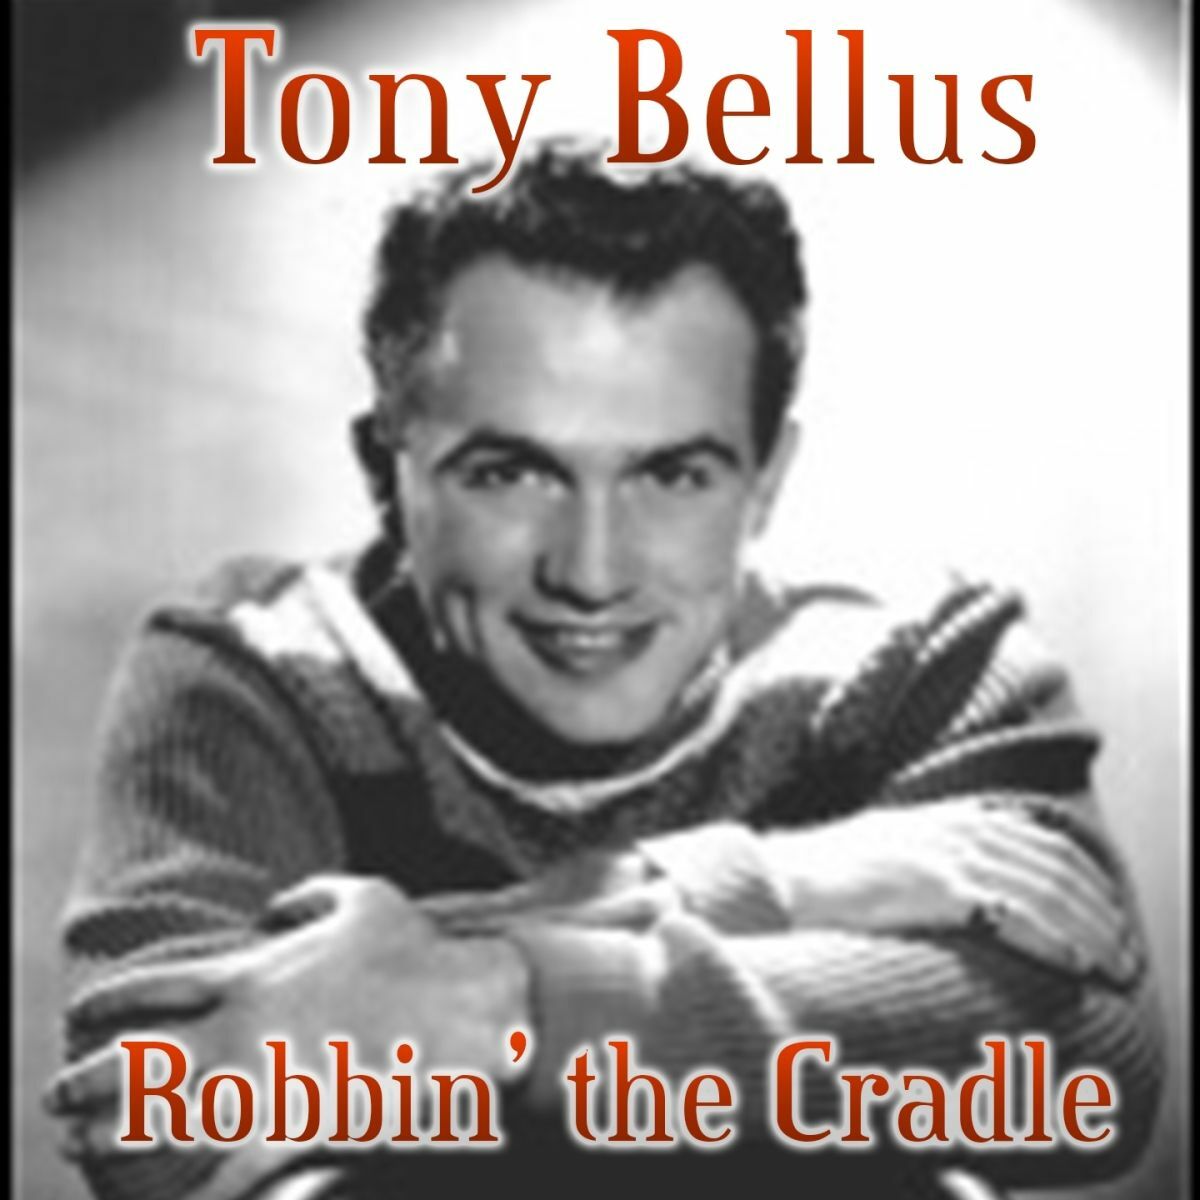 Tony Bellus: albums